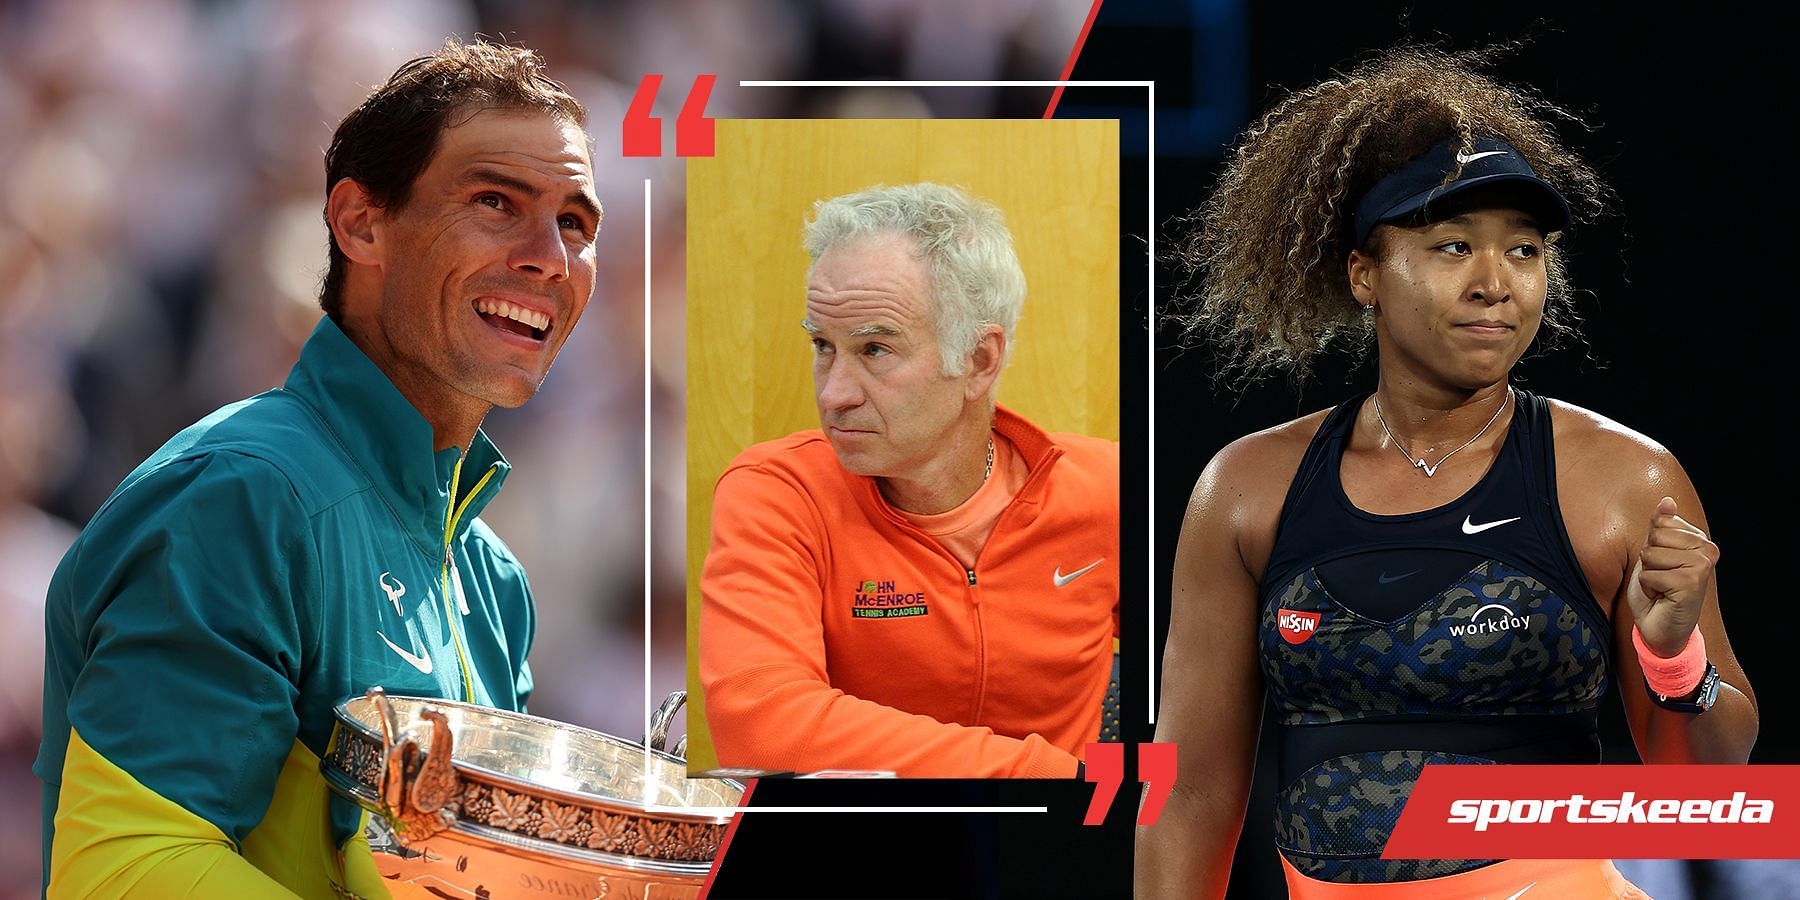 from L to R: John McEnroe, Rafael Nadal, and Naomi Osaka